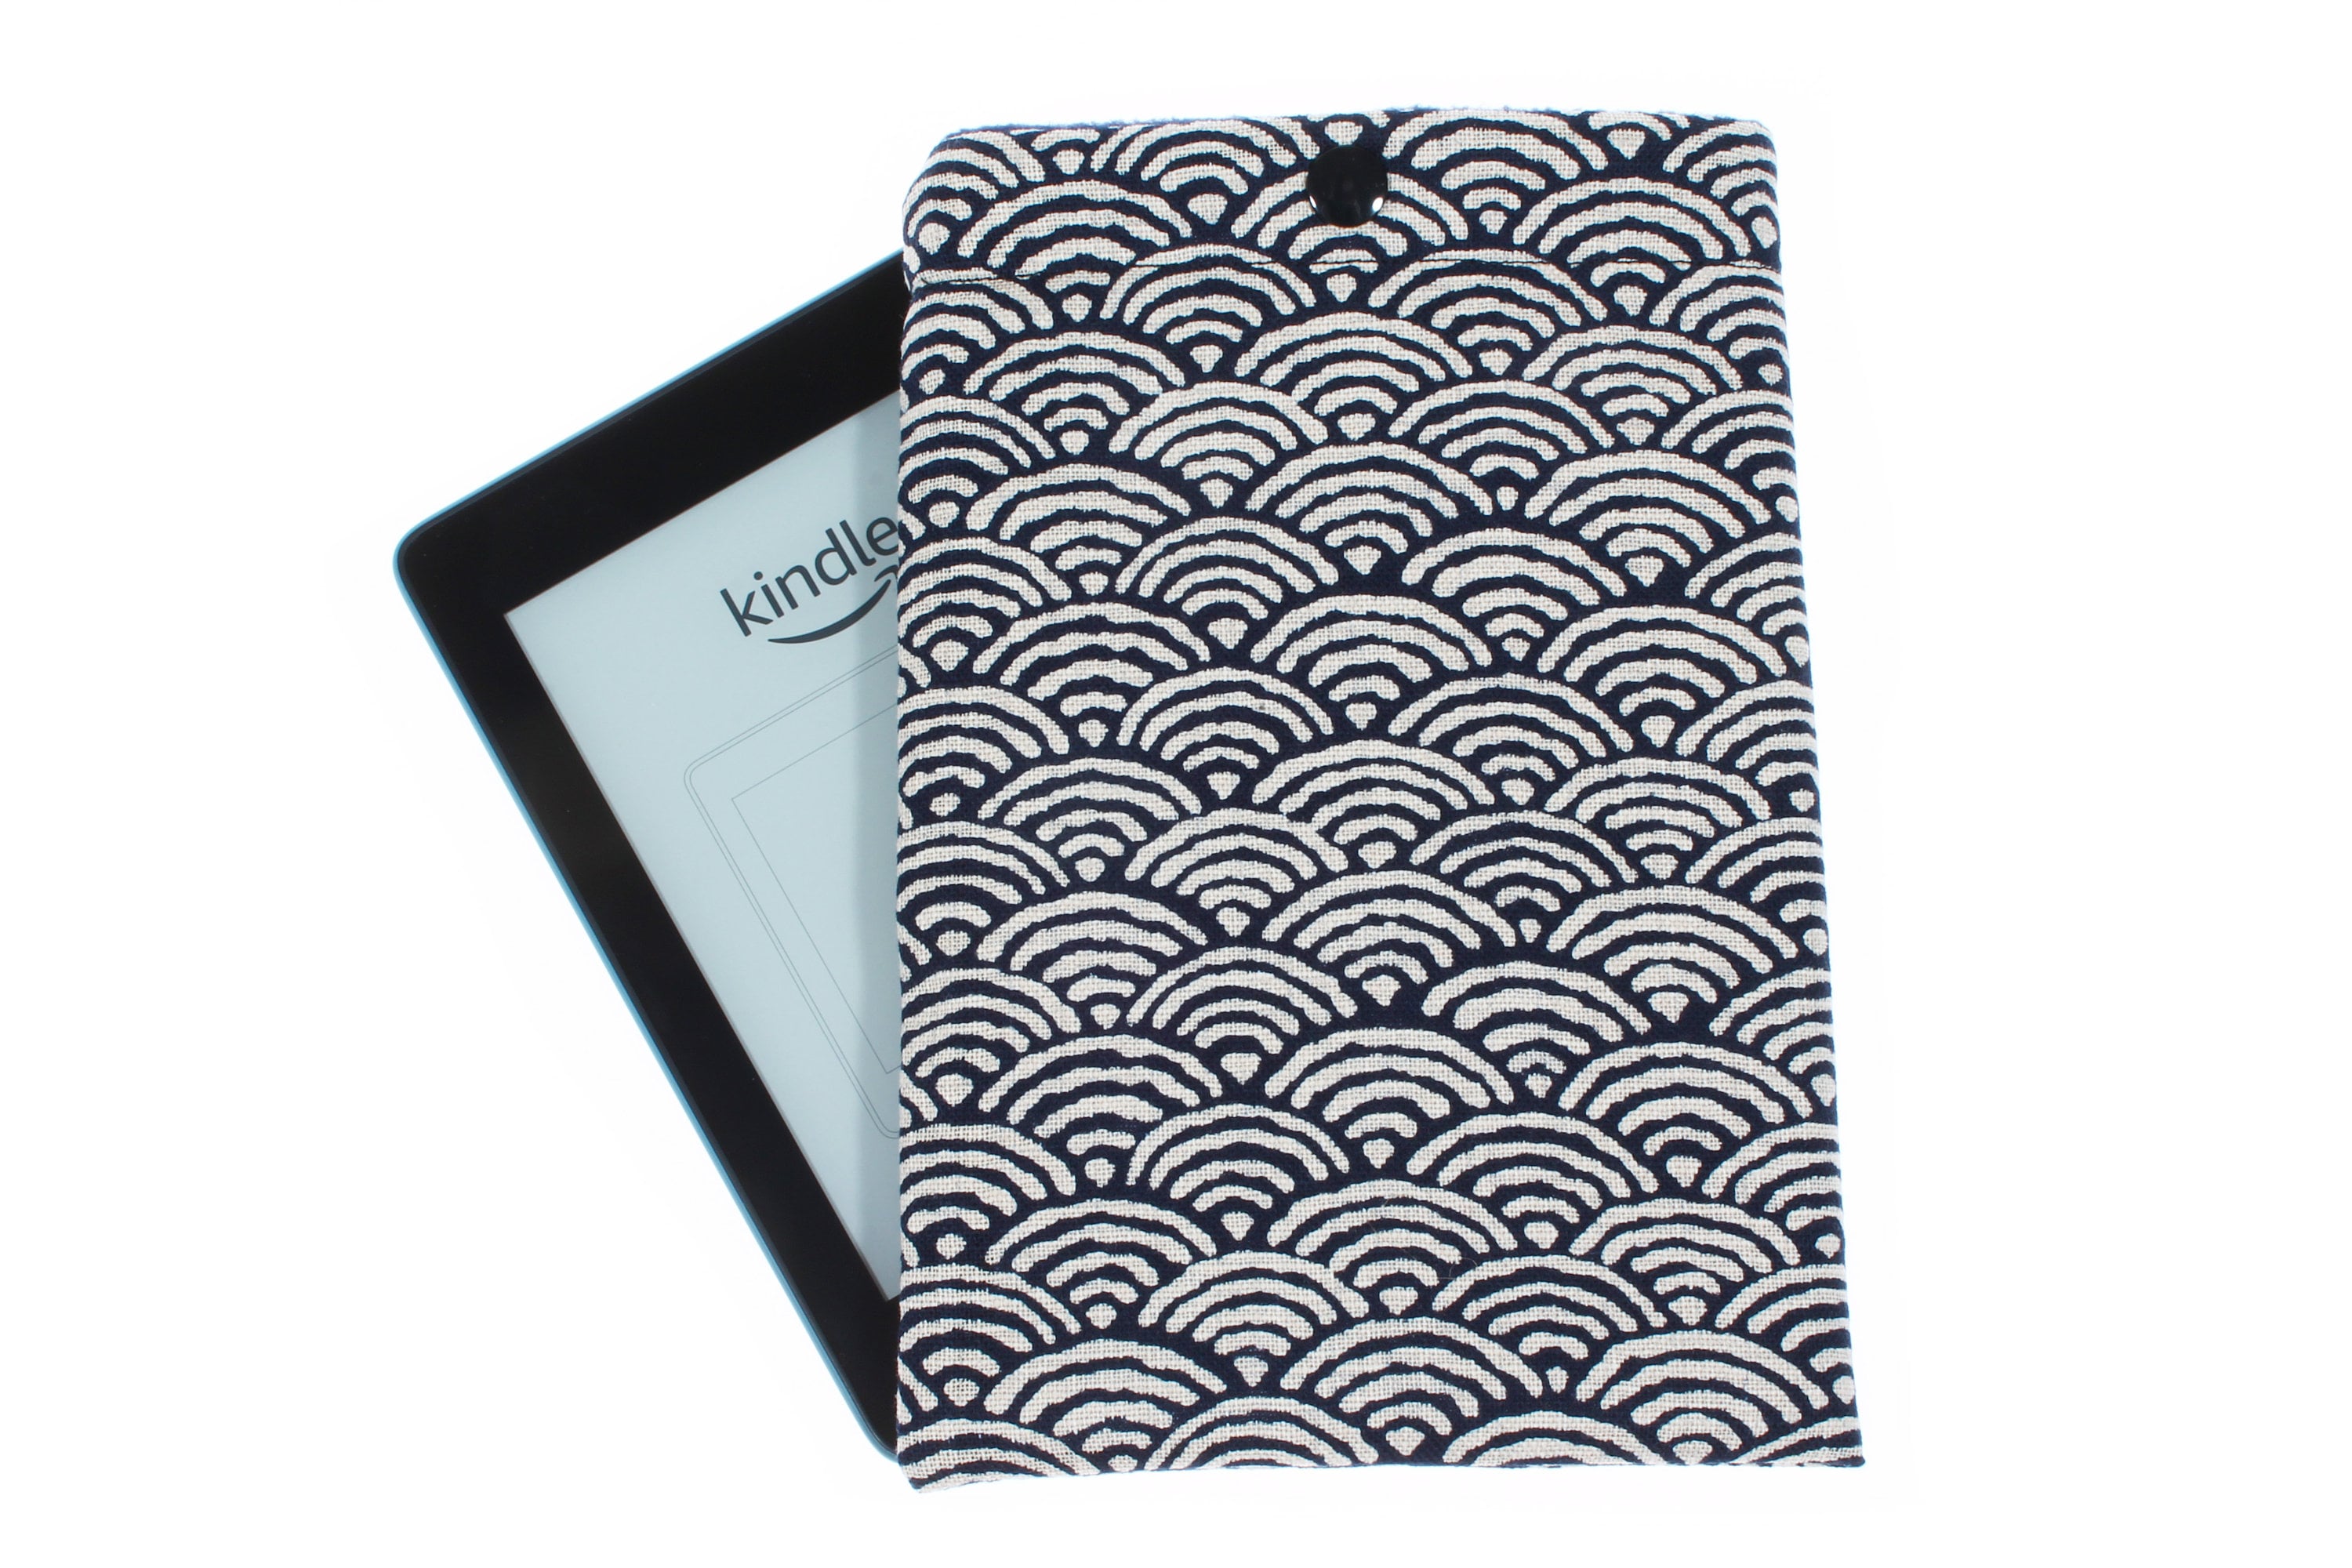 Rakuten Kobo Clara 2e Basic Sleepcover Funda Para Libro Electrónico 15,2 Cm  (6') Folio Azul con Ofertas en Carrefour